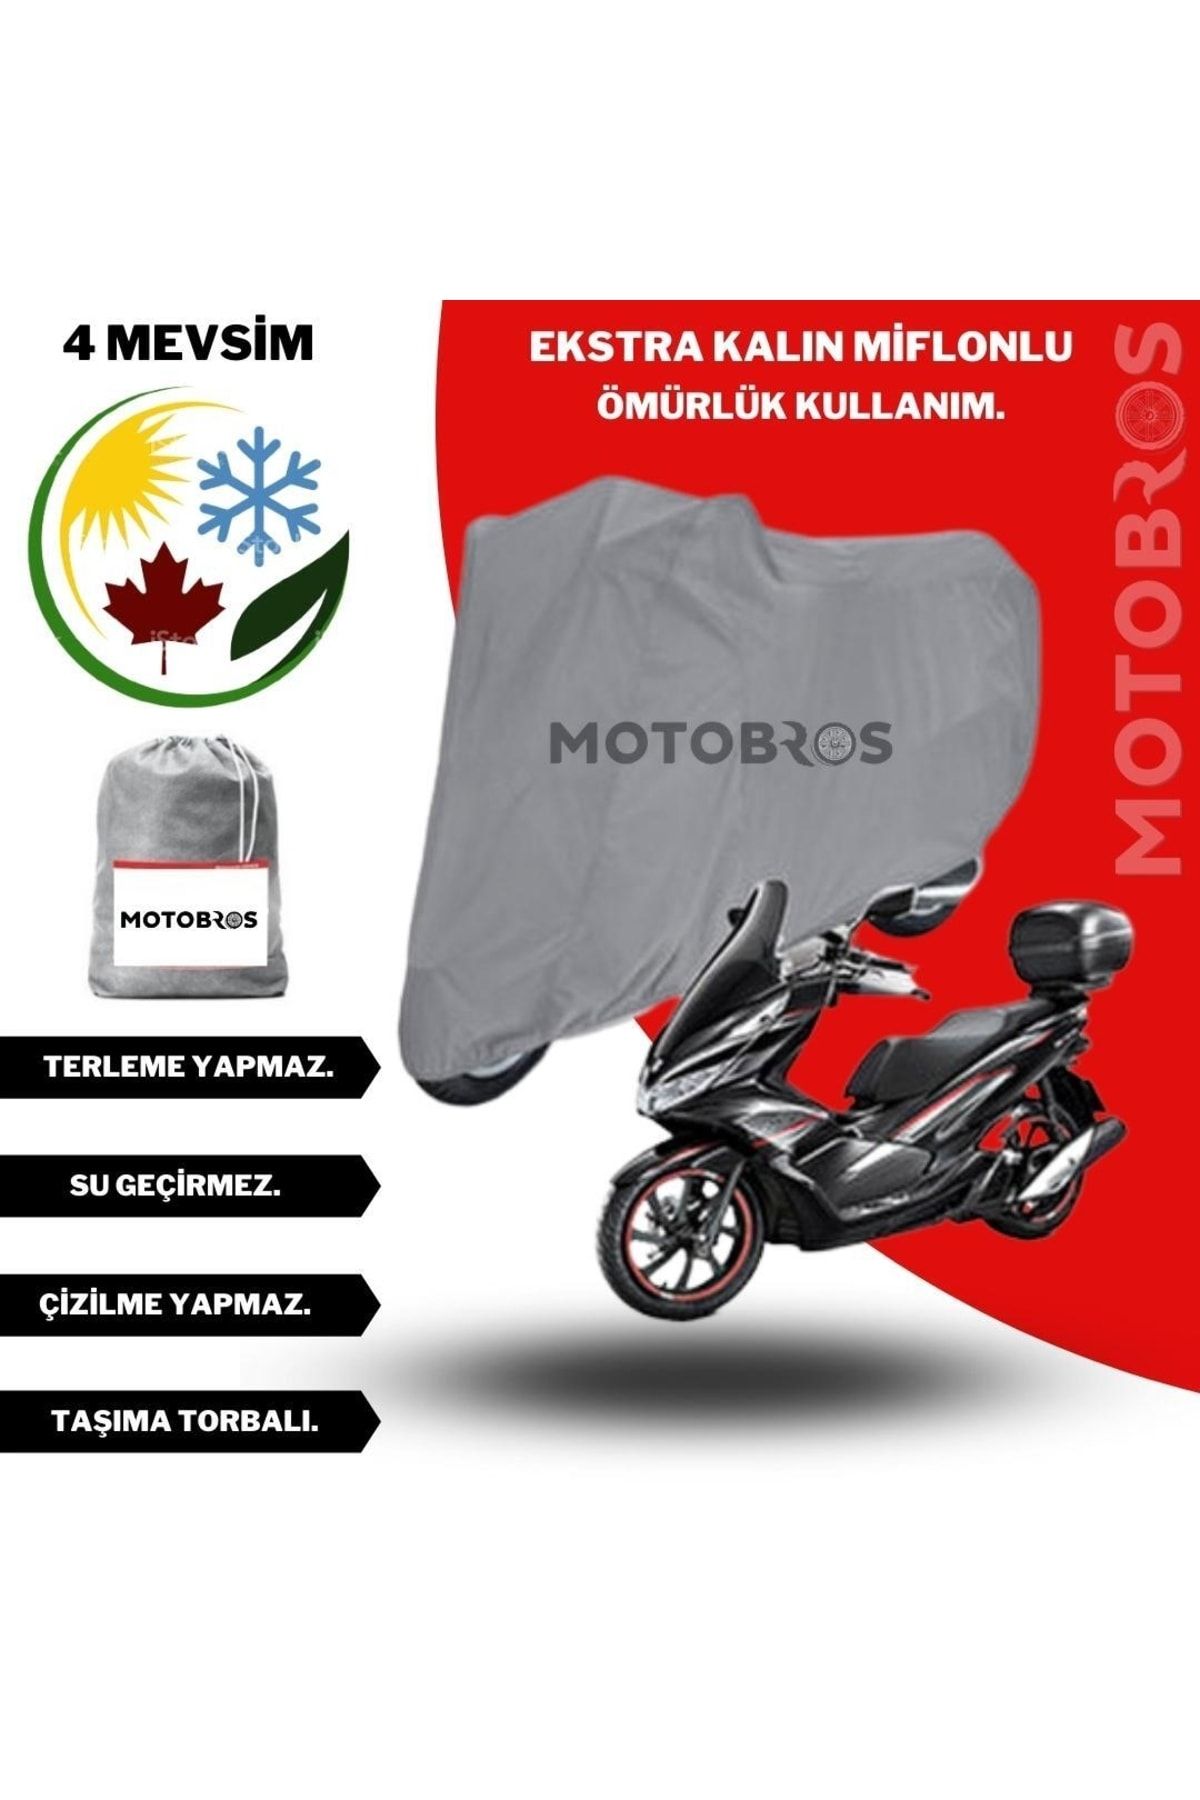 Motobros Motor Brandası Motosiklet Brandası 50-125cc Tüm Scooter Modellere Uyumludur Ekstra Kalın Su Geçirmez